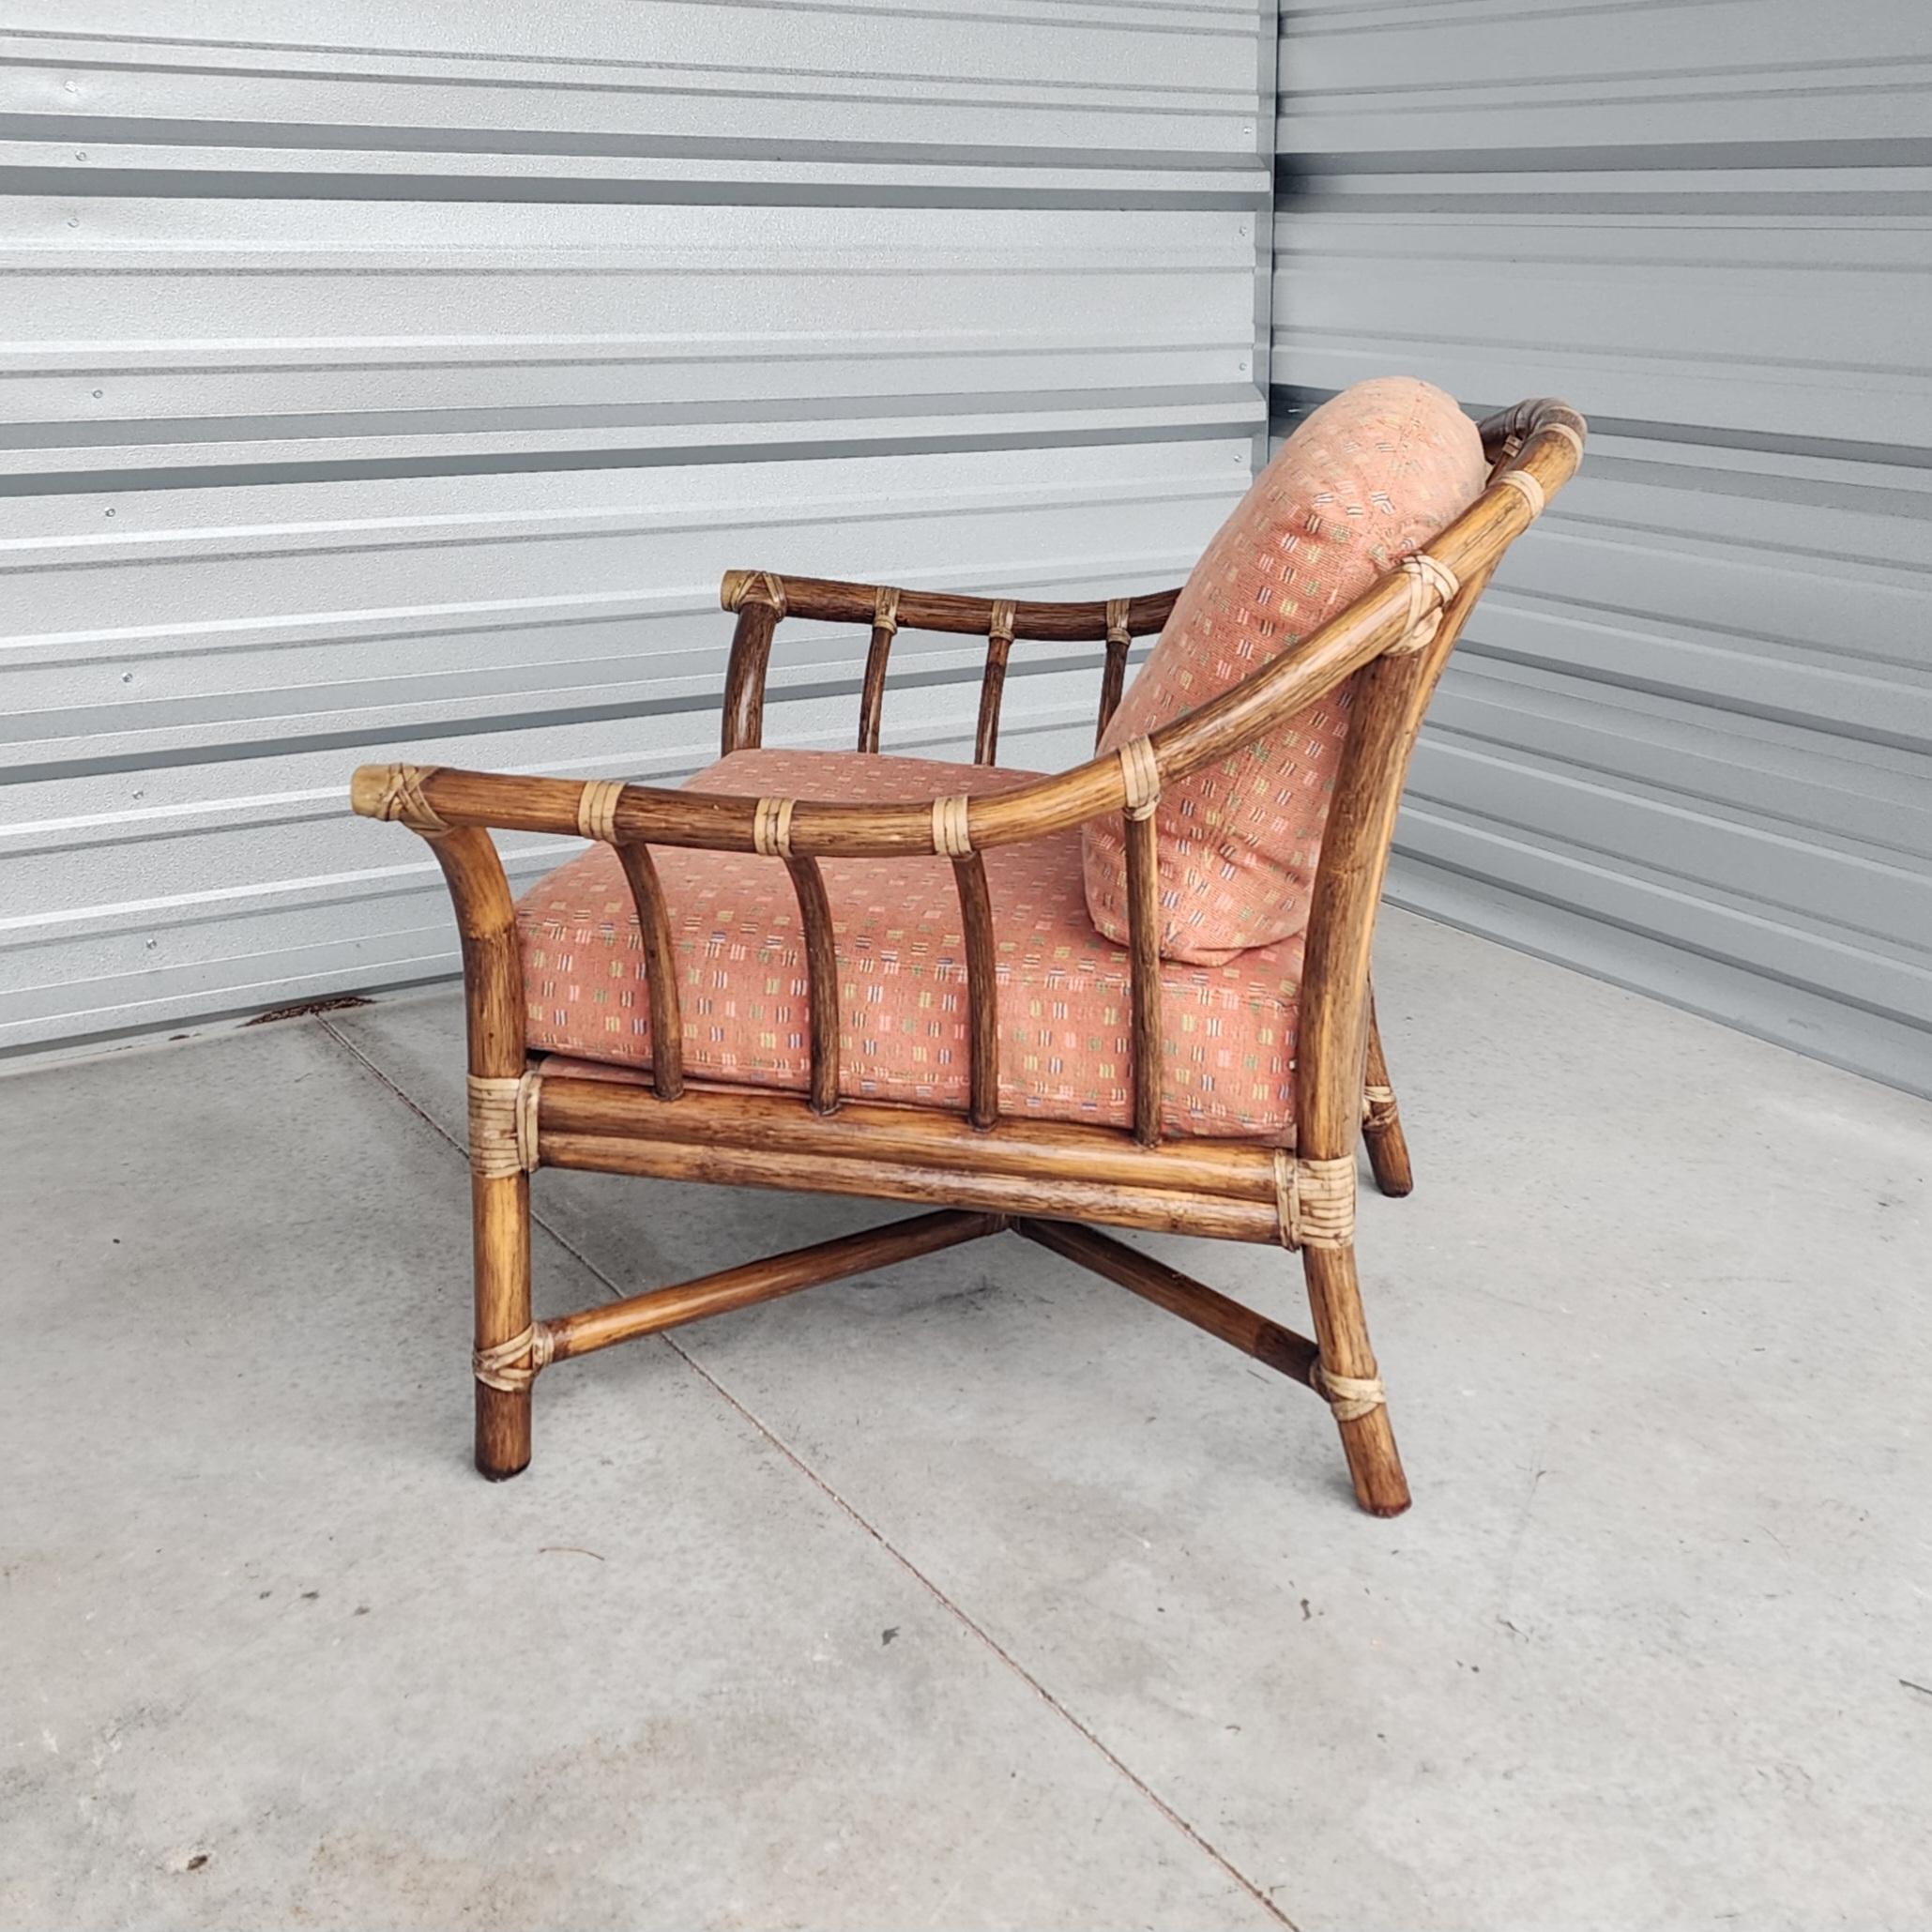 Magnifique chaise longue surdimensionnée en rotin courbé, fabriquée dans le style côtier moderne et organique californien par McGuire. Cette chaise présente un grand cadre en rotin courbé en forme de fer à cheval avec des supports gracieusement